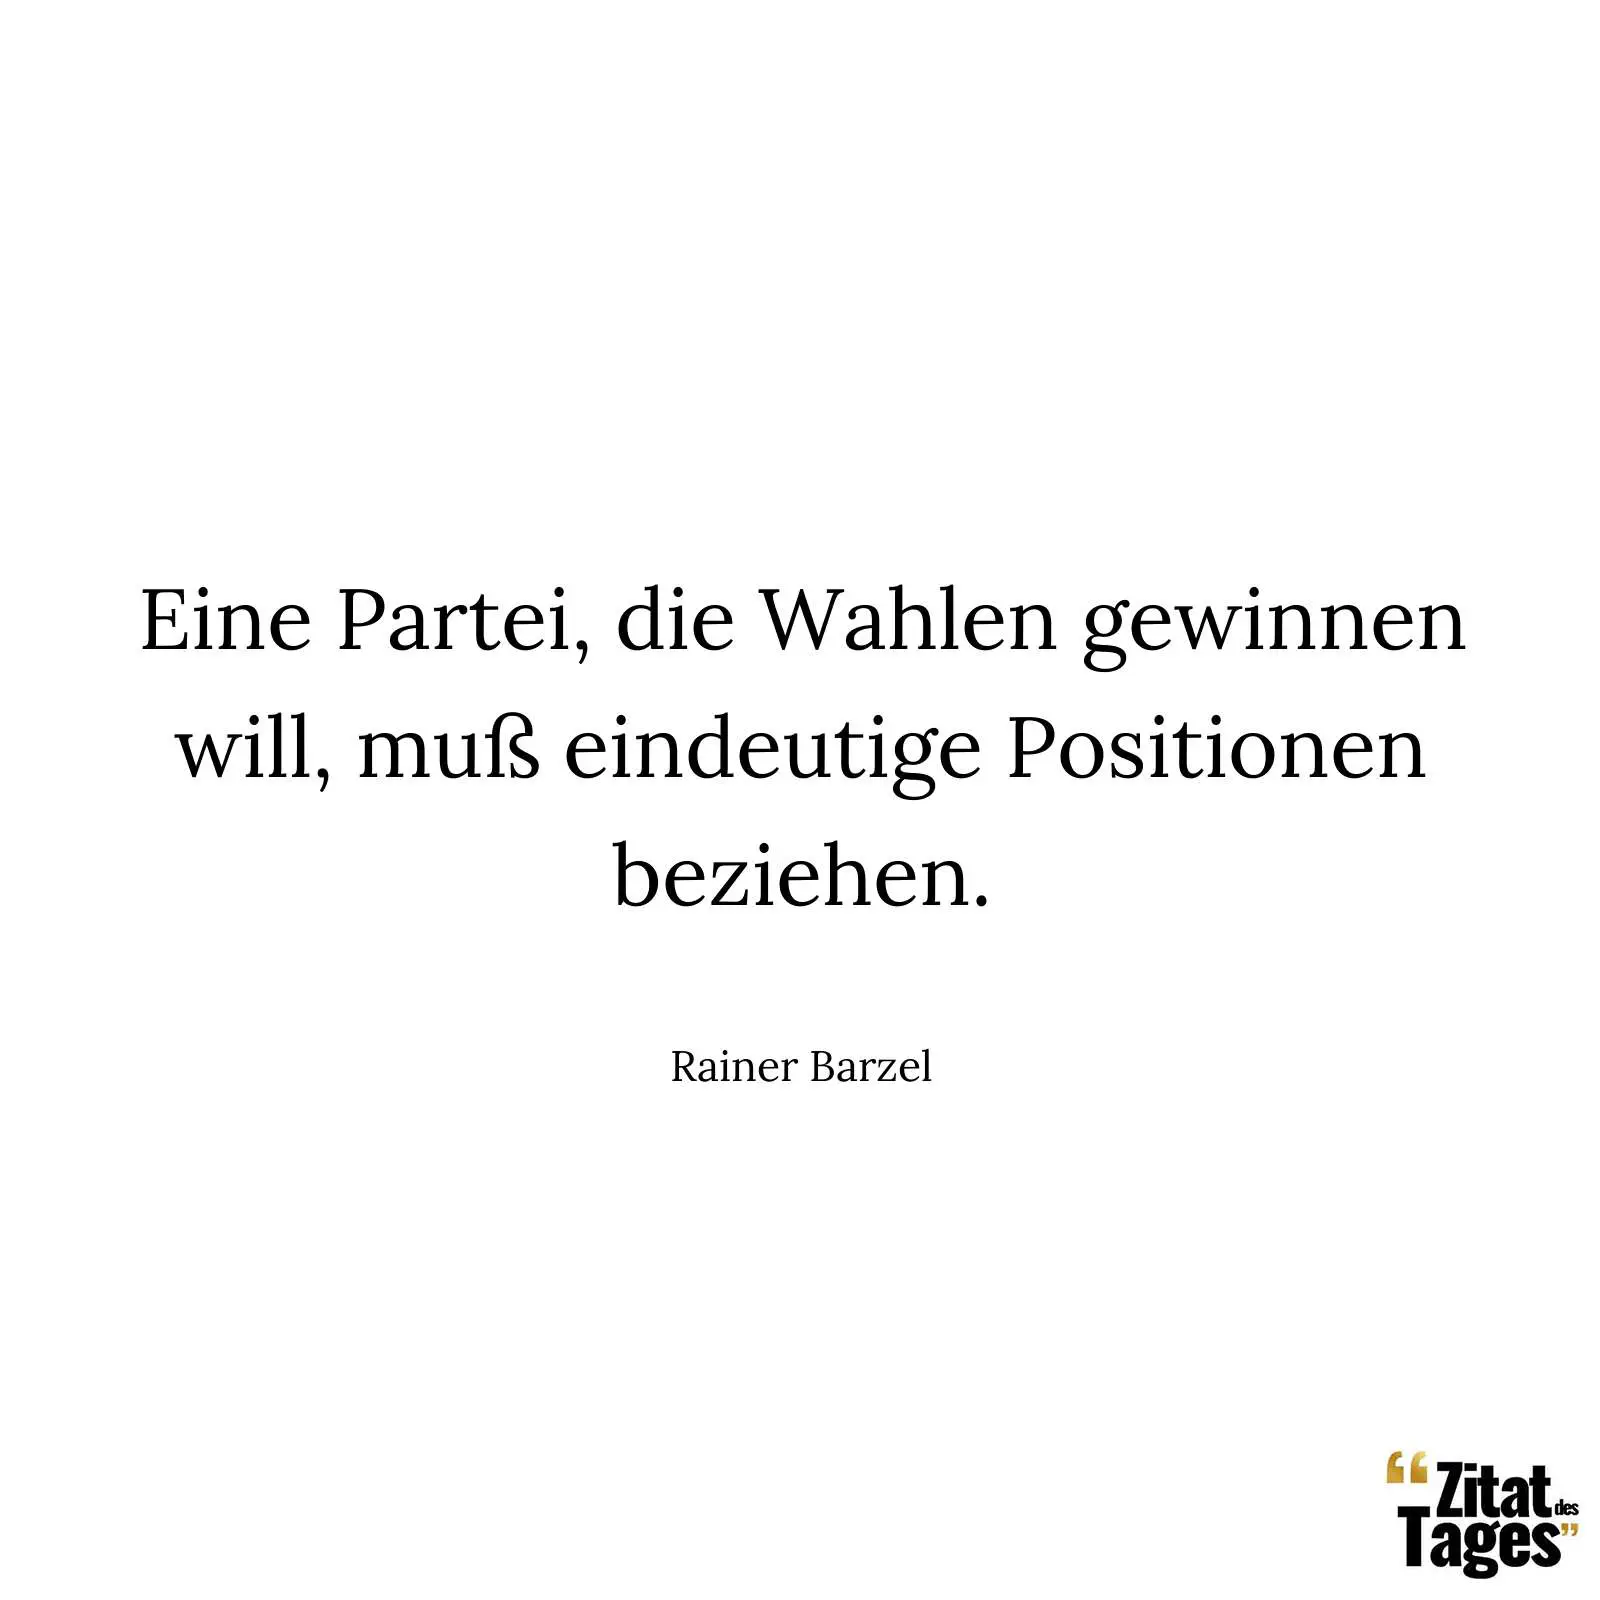 Eine Partei, die Wahlen gewinnen will, muß eindeutige Positionen beziehen. - Rainer Barzel